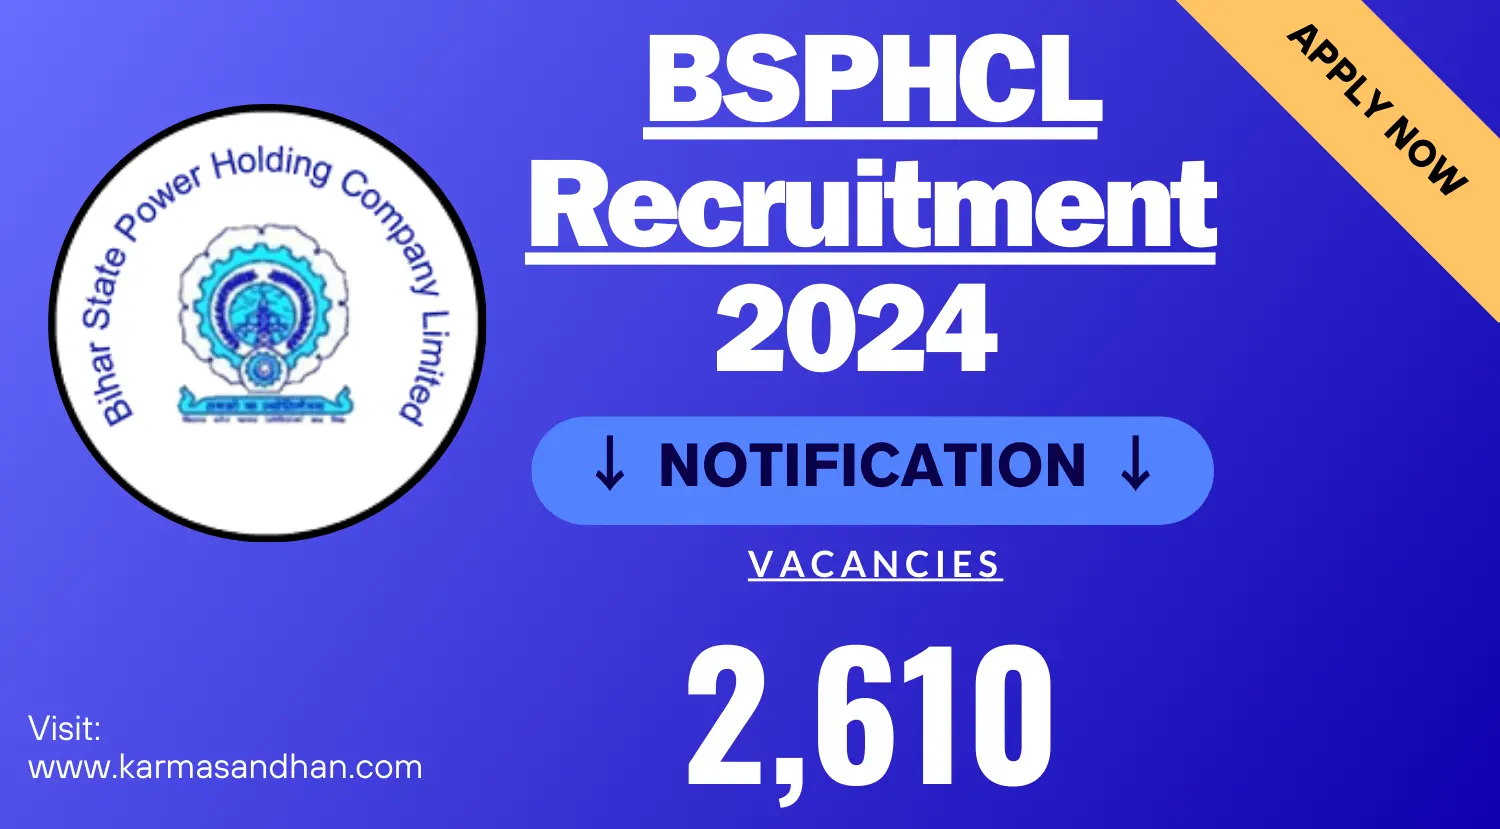 BSPHCL Recruitment 2024 2610 Vacancies